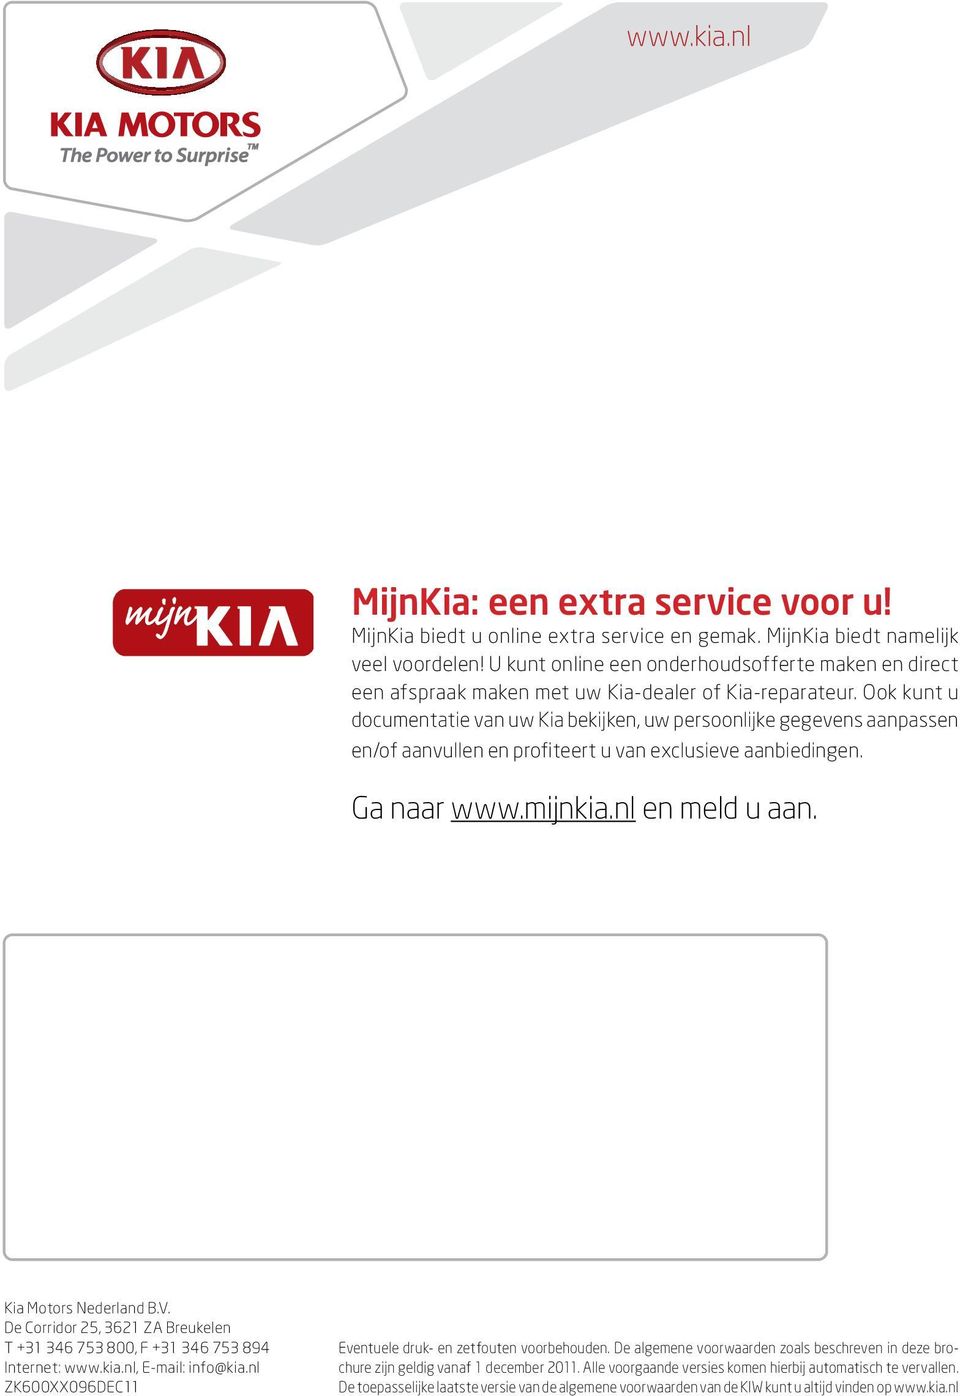 Ook kunt u documentatie van uw Kia bekijken, uw persoonlijke gegevens aanpassen en/of aanvullen en profiteert u van exclusieve aanbiedingen. Ga naar www.mijnkia.nl en meld u aan.